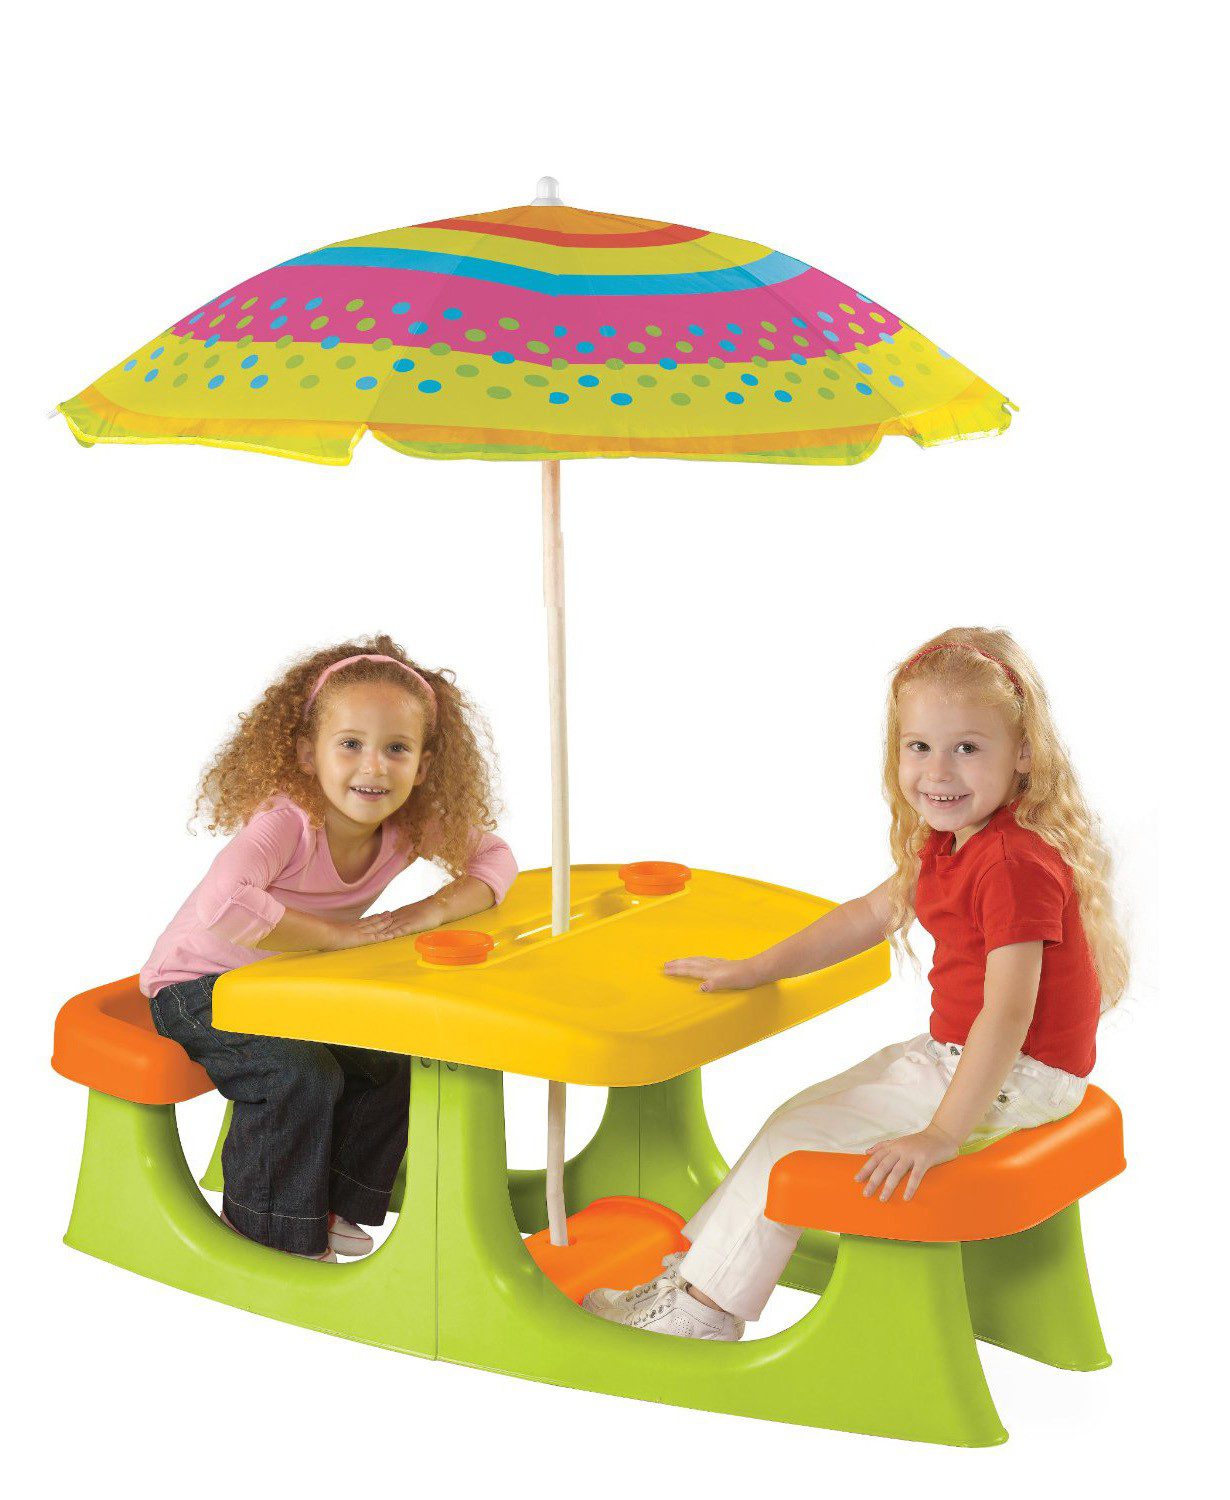 Детский стол для творчества Patio Center Without Umbrella